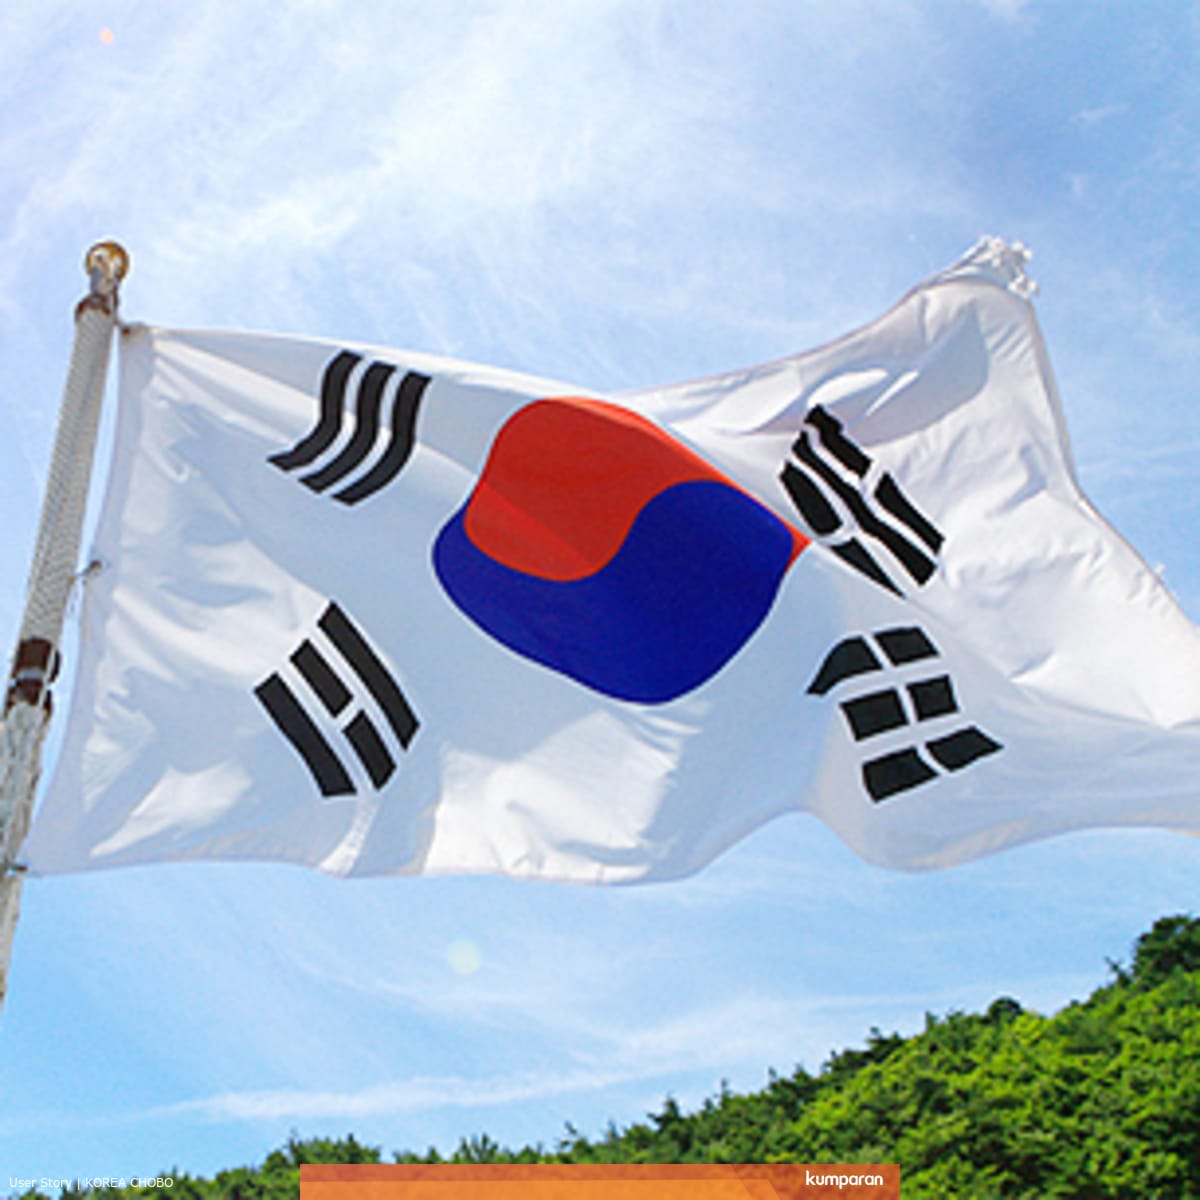 Mengetahui Lebih Jauh tentang Bendera Nasional Korea, Taegeukgi! -  kumparan.com